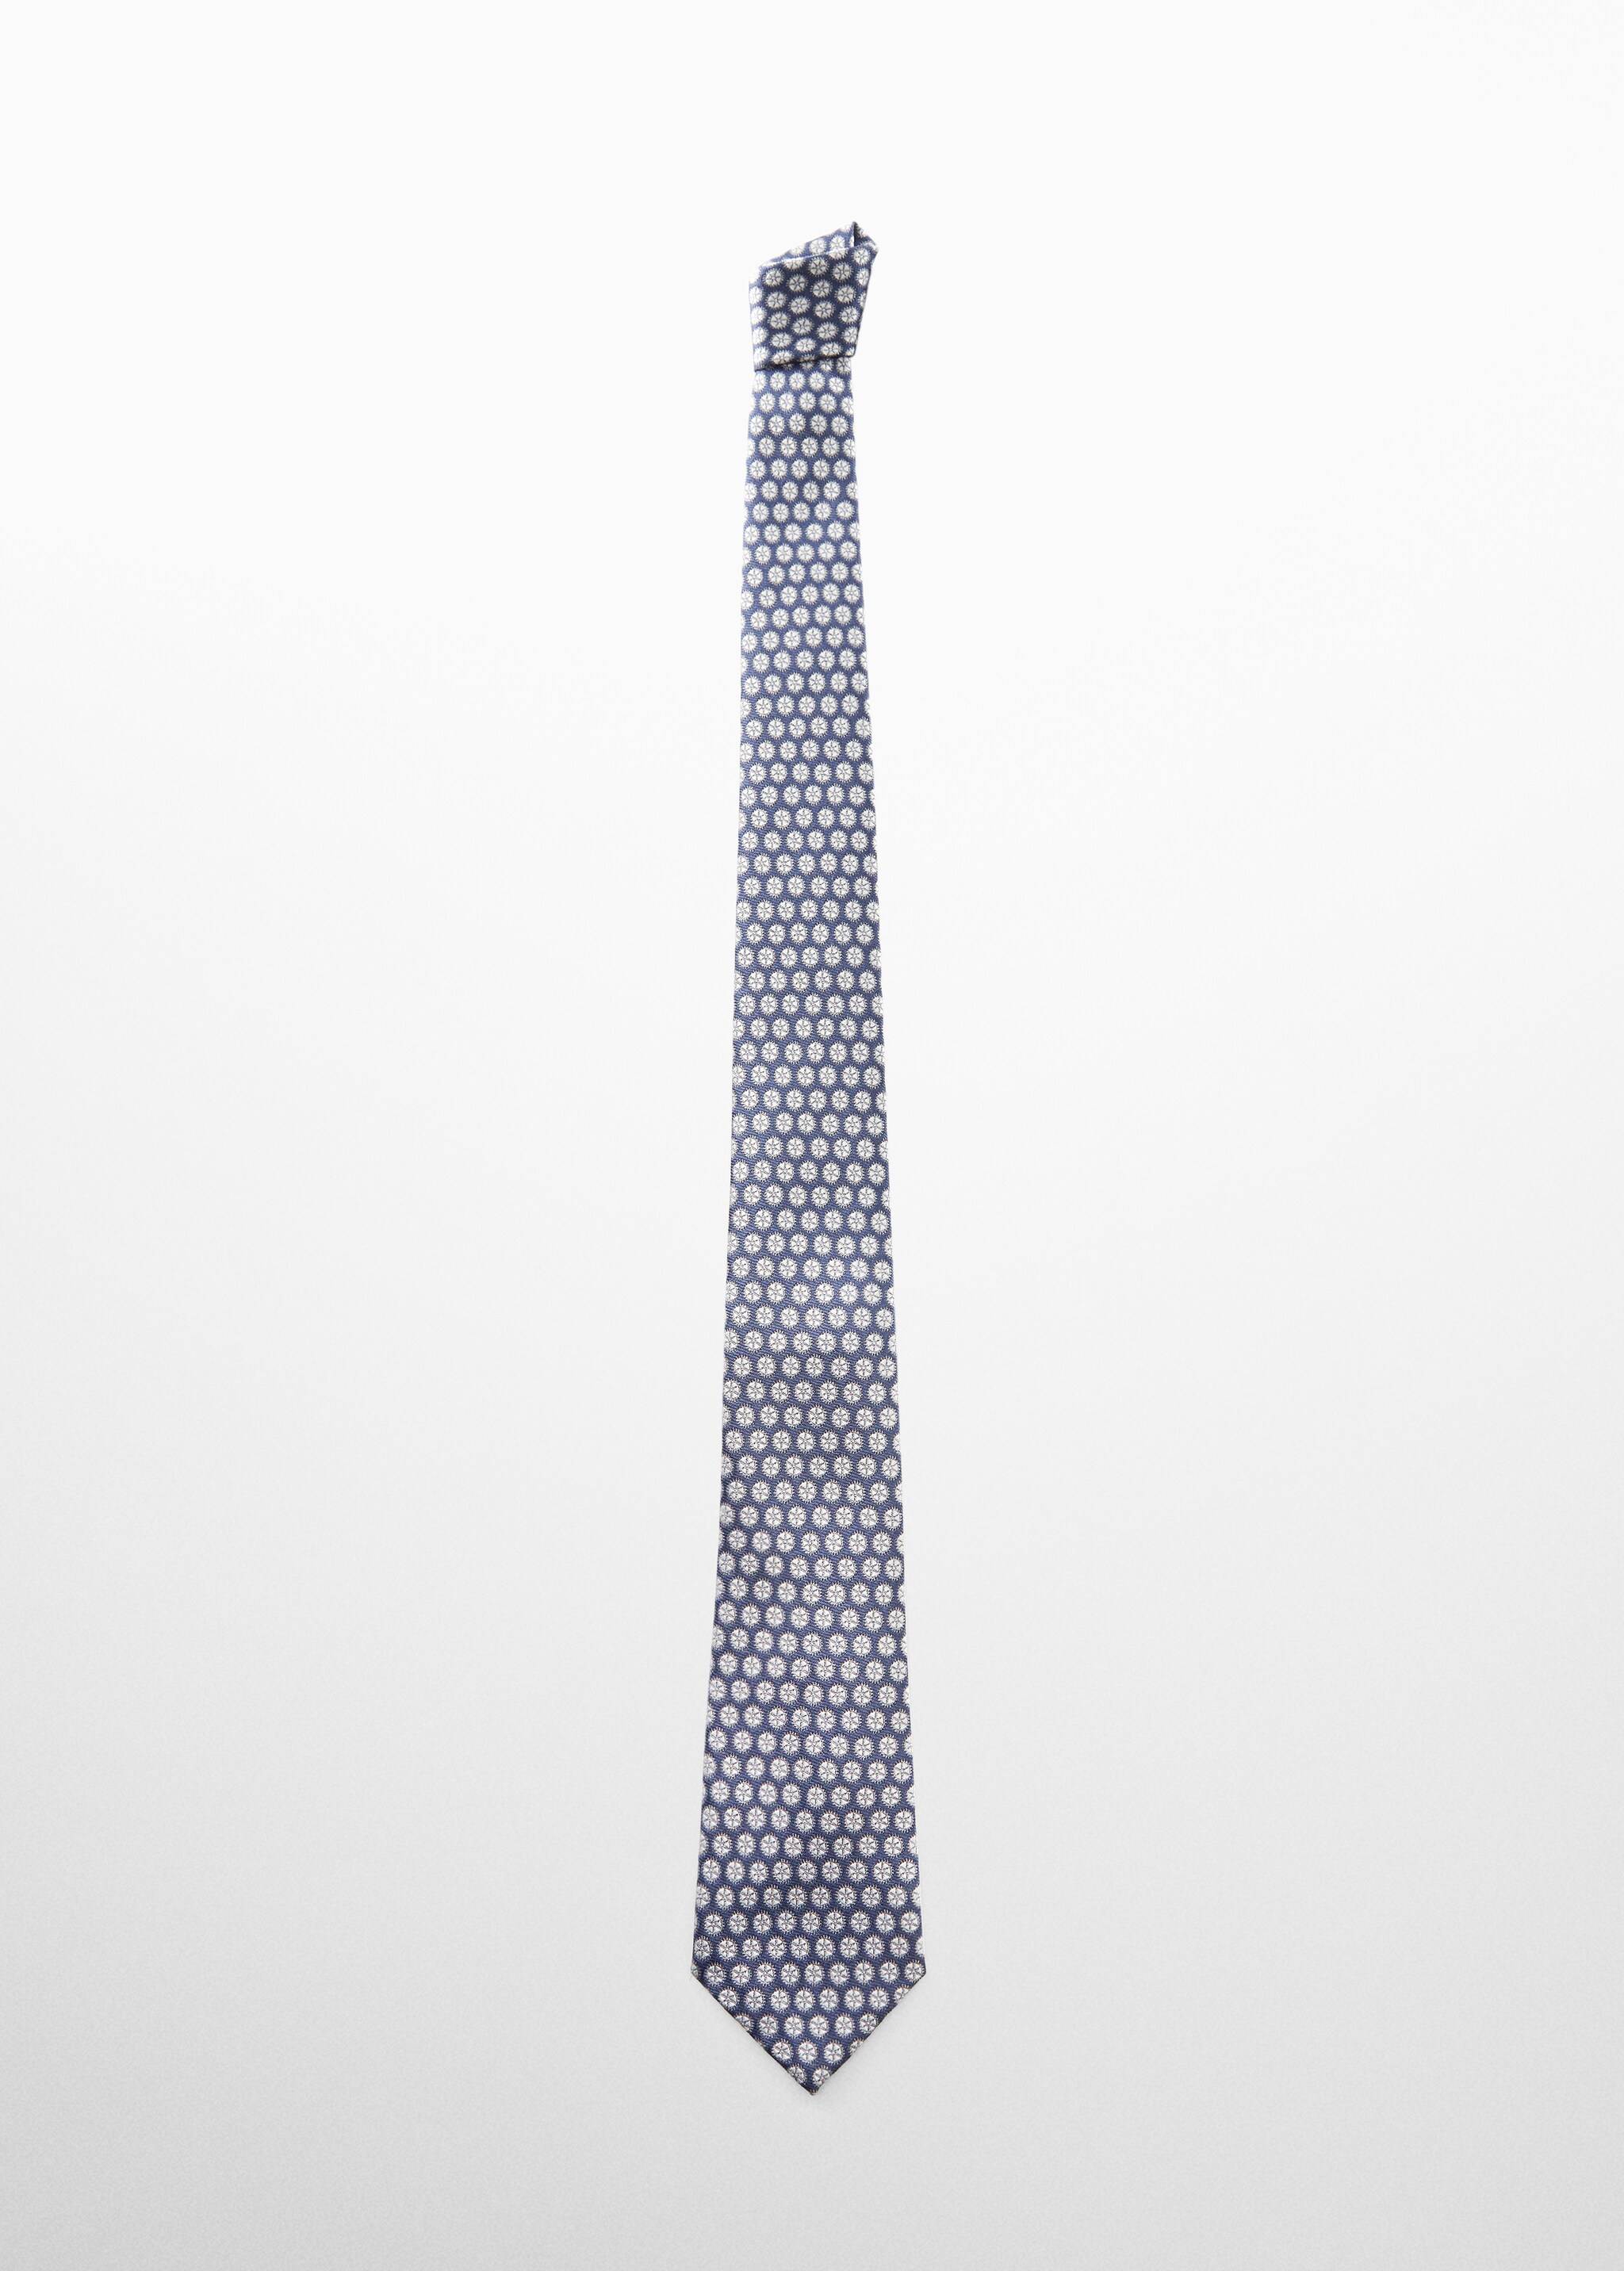 ربطة عنق مطبوعة بأشكال هندسية - منتج دون نموذج